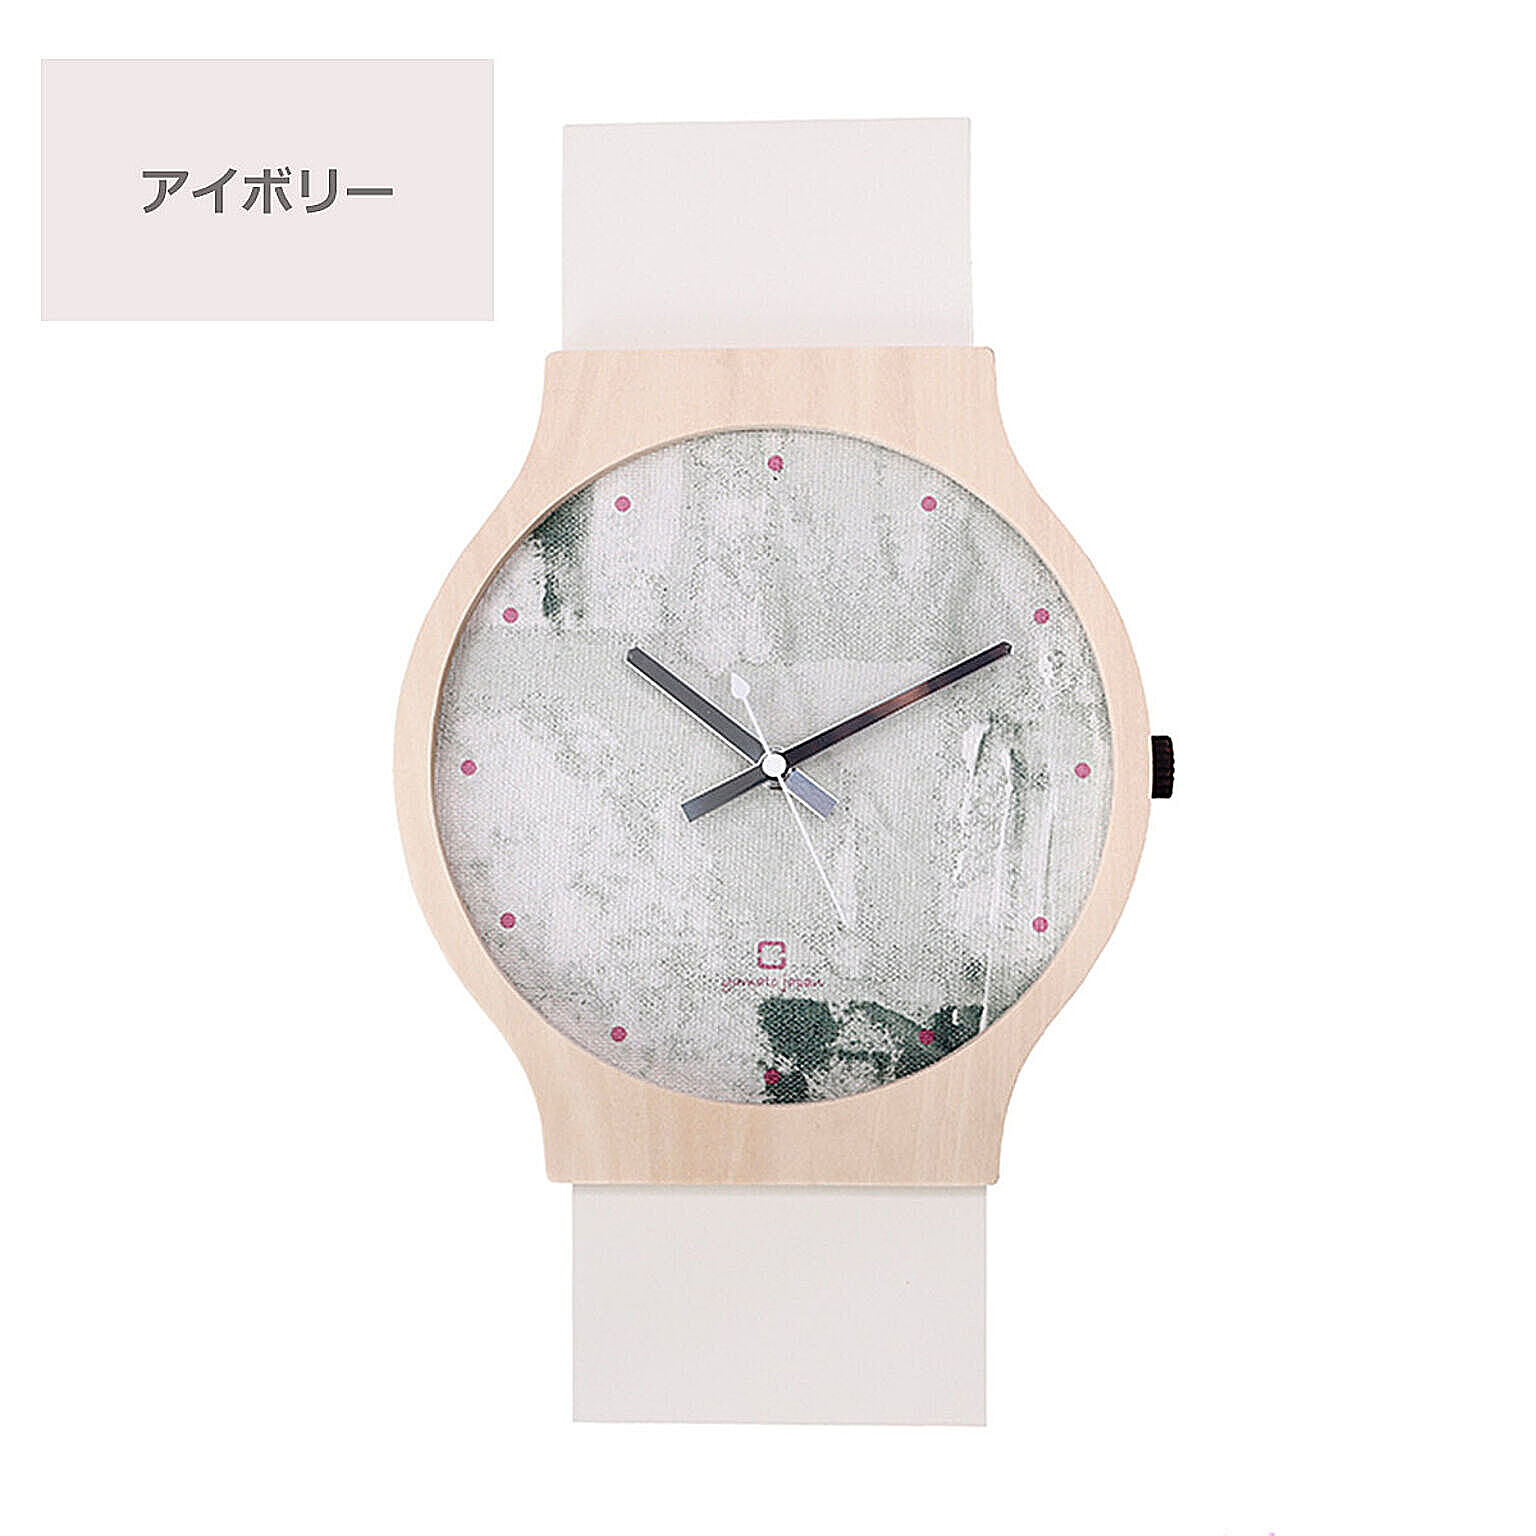 時計 壁掛け 掛け時計 おしゃれ アナログ 木製 北欧 日本製 国産 かわいい 天然木 ウッド ナチュラル painting clock ヤマト工芸 パステルカラー 可愛い 腕時計モチーフ 子供部屋 